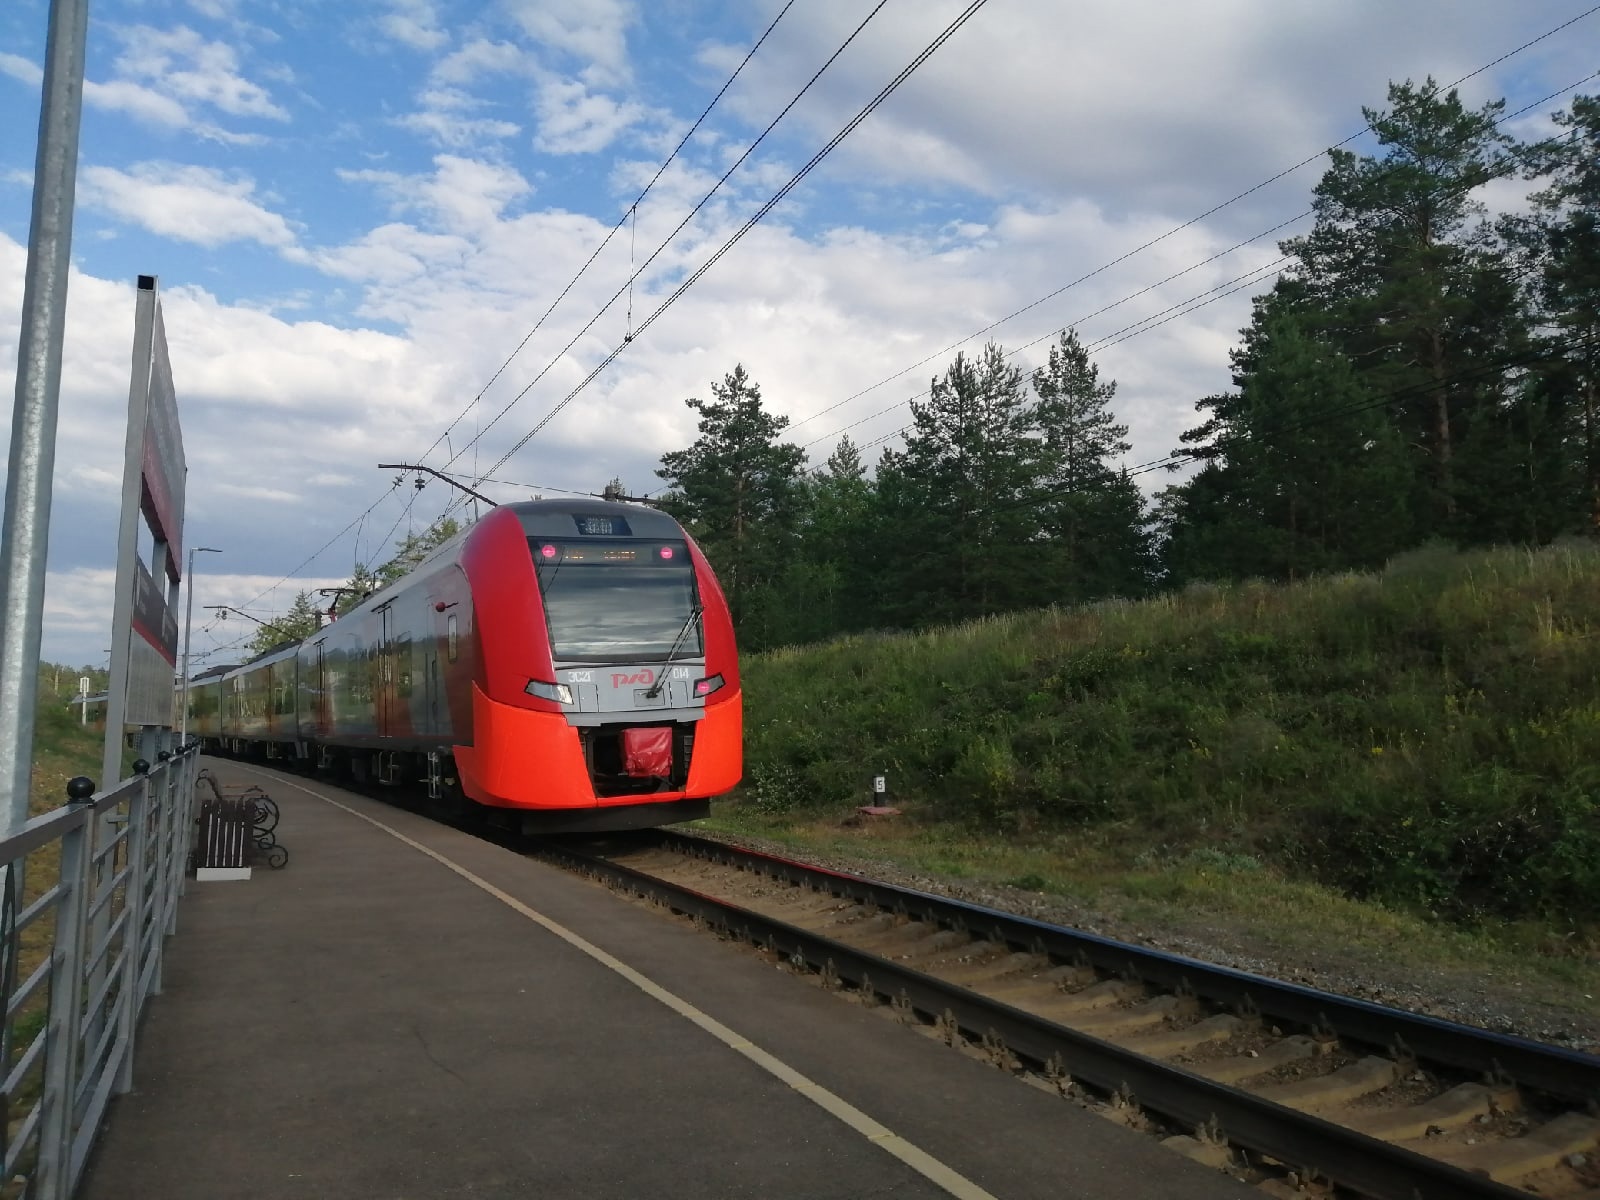  Куда сбежать от городской суеты на электричке: 6 маршрутов по Самарской области от ProGorodSamara 